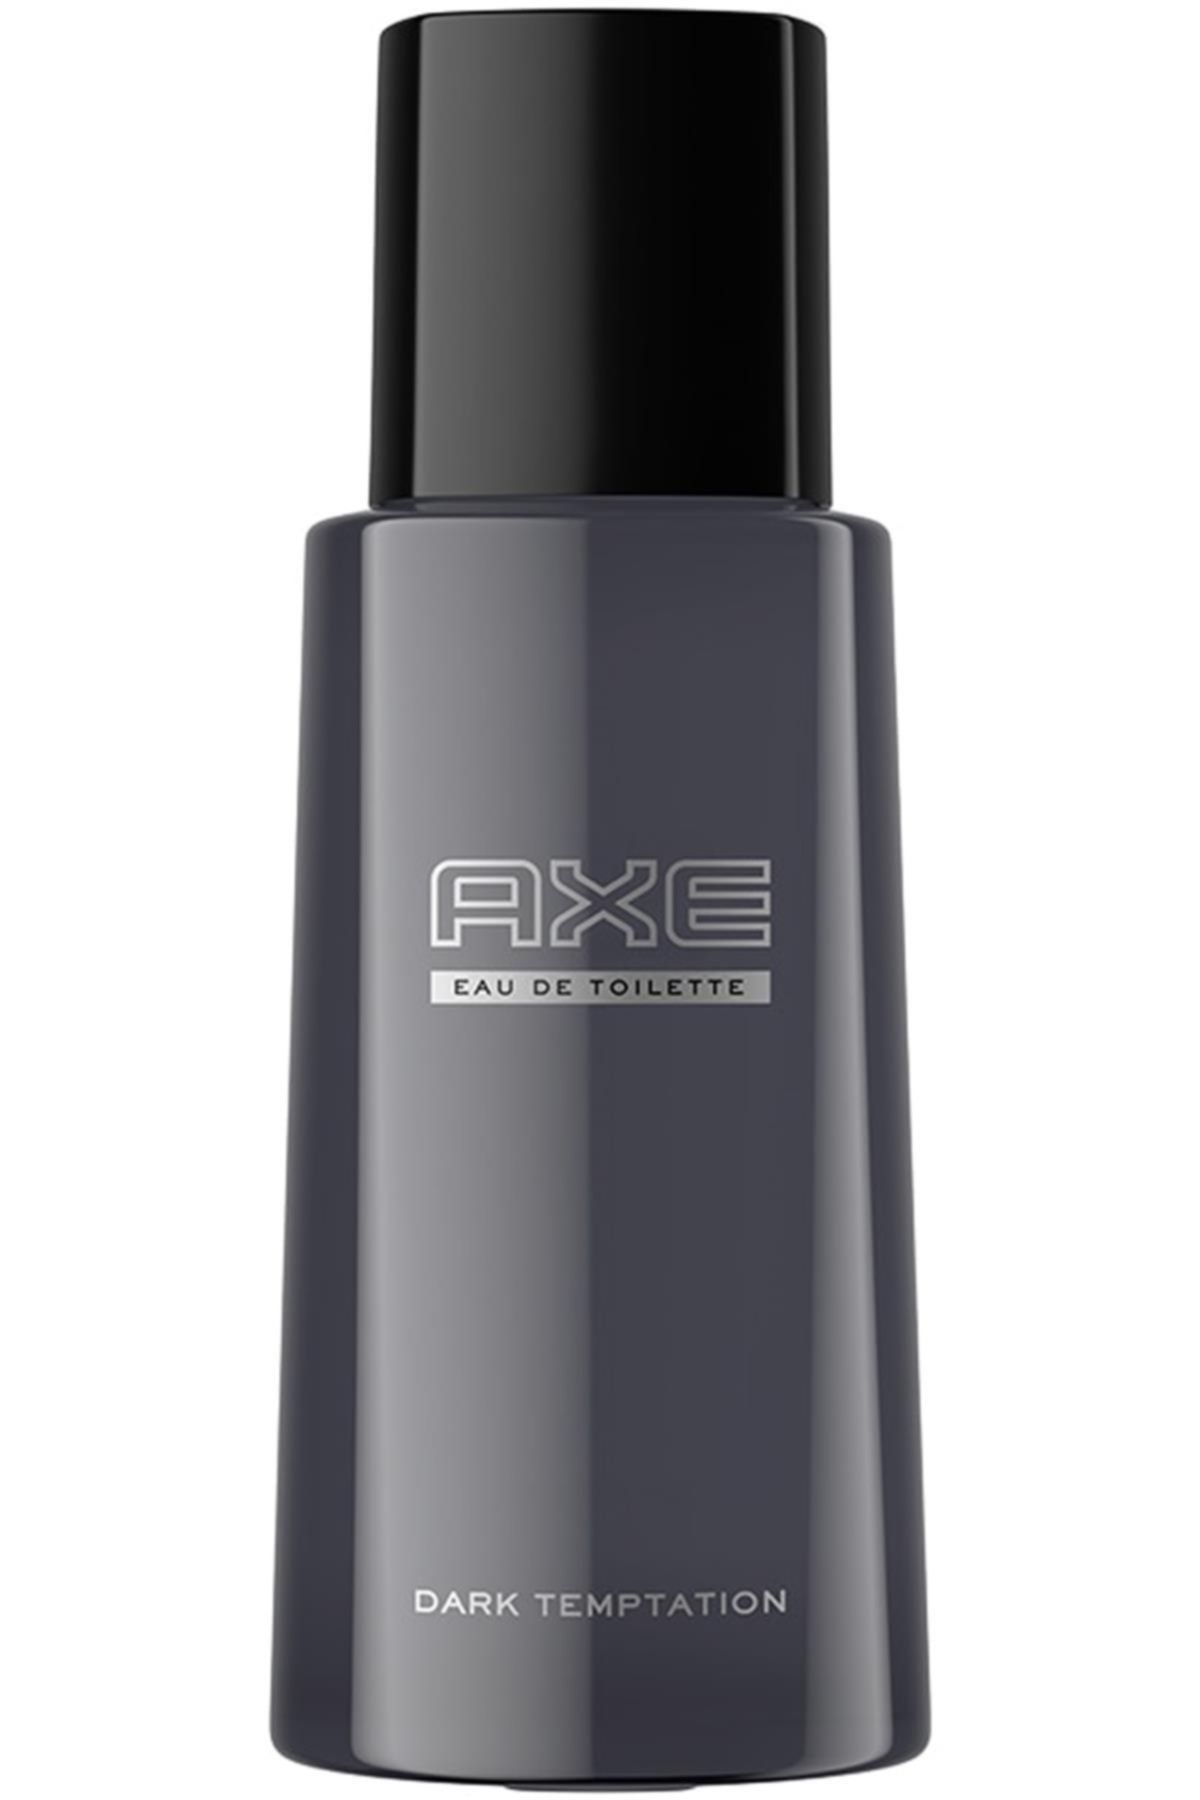 Axe Erkek Parfüm Edt Dark Temptation 100 Ml Kategori: Parfüm BKTPLTY800038